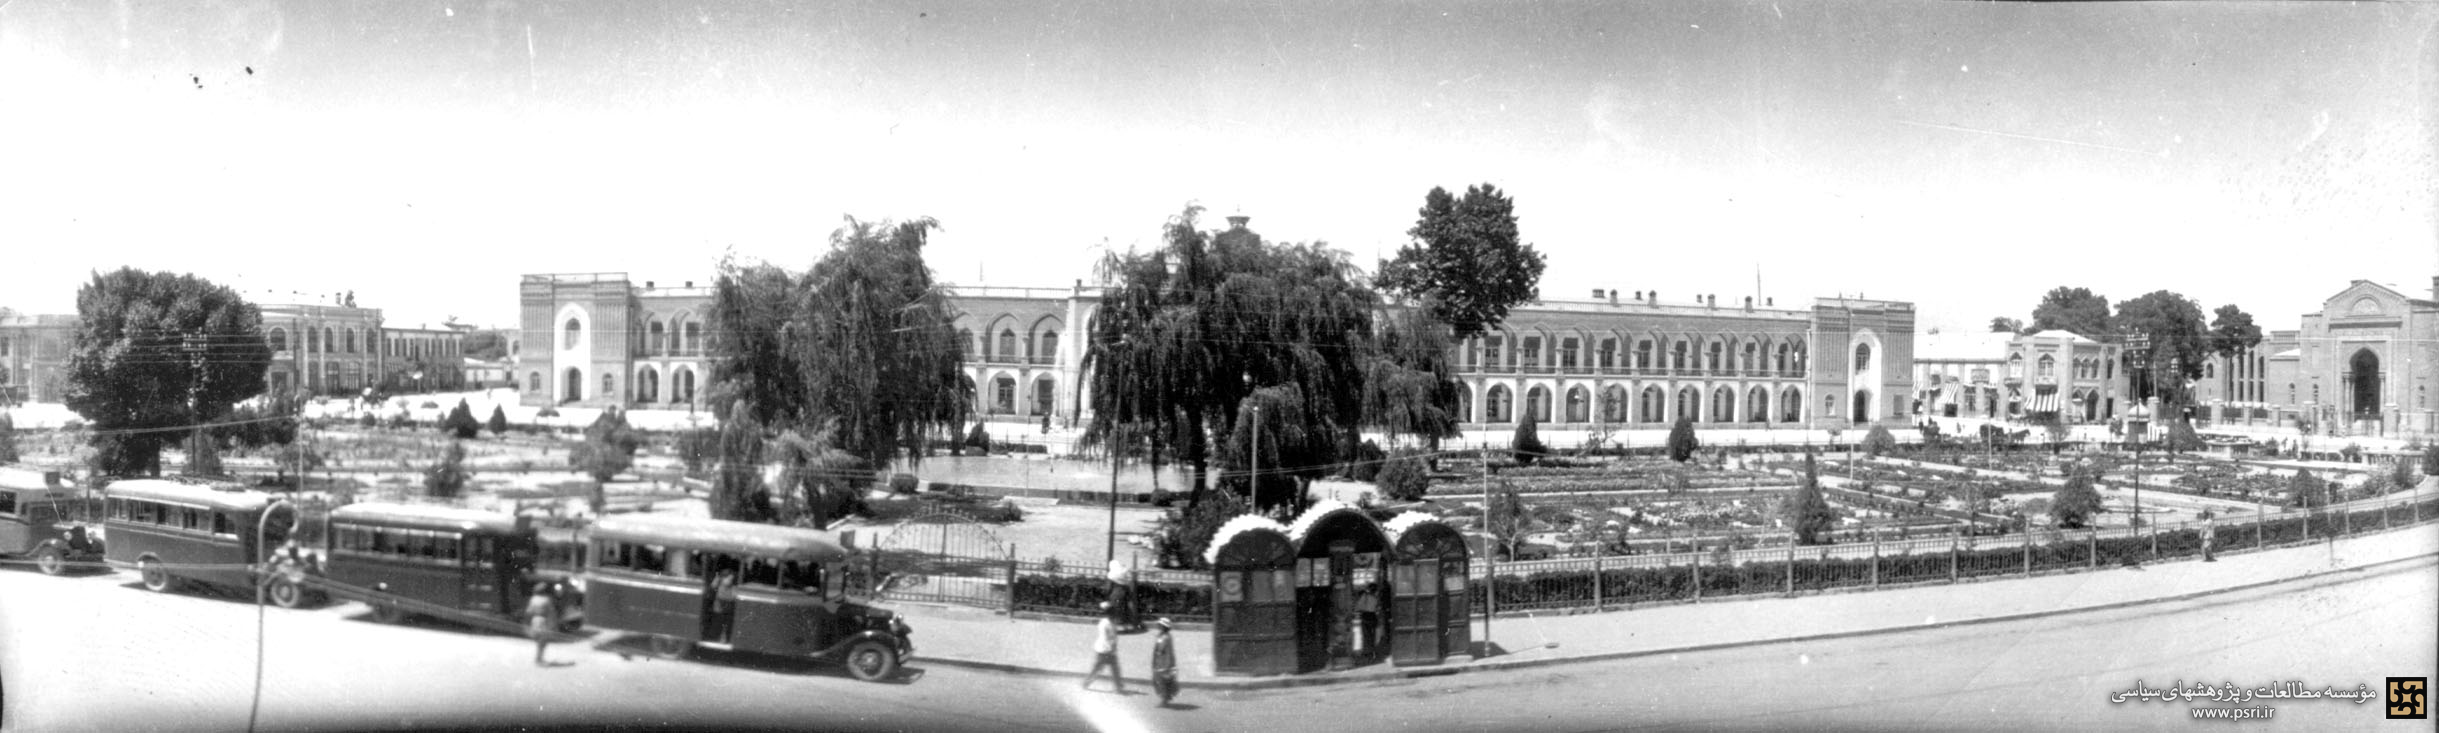 تصویری قدیمی از میدان توپخانه